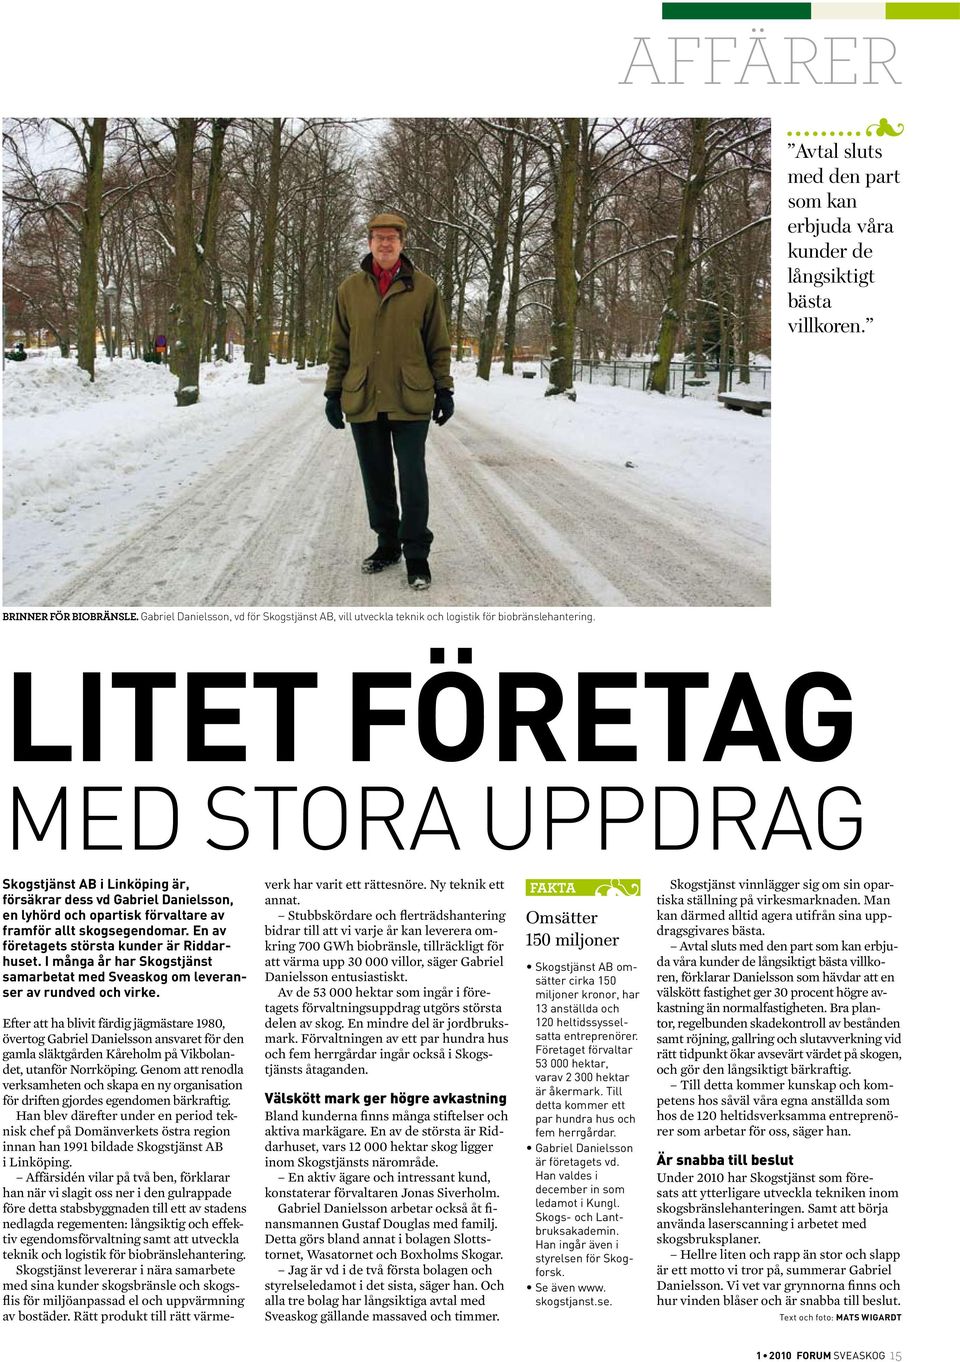 Litet företag med stora uppdrag Skogstjänst AB i Linköping är, försäkrar dess vd Gabriel Danielsson, en lyhörd och opartisk förvaltare av fram för allt skogsegendomar.